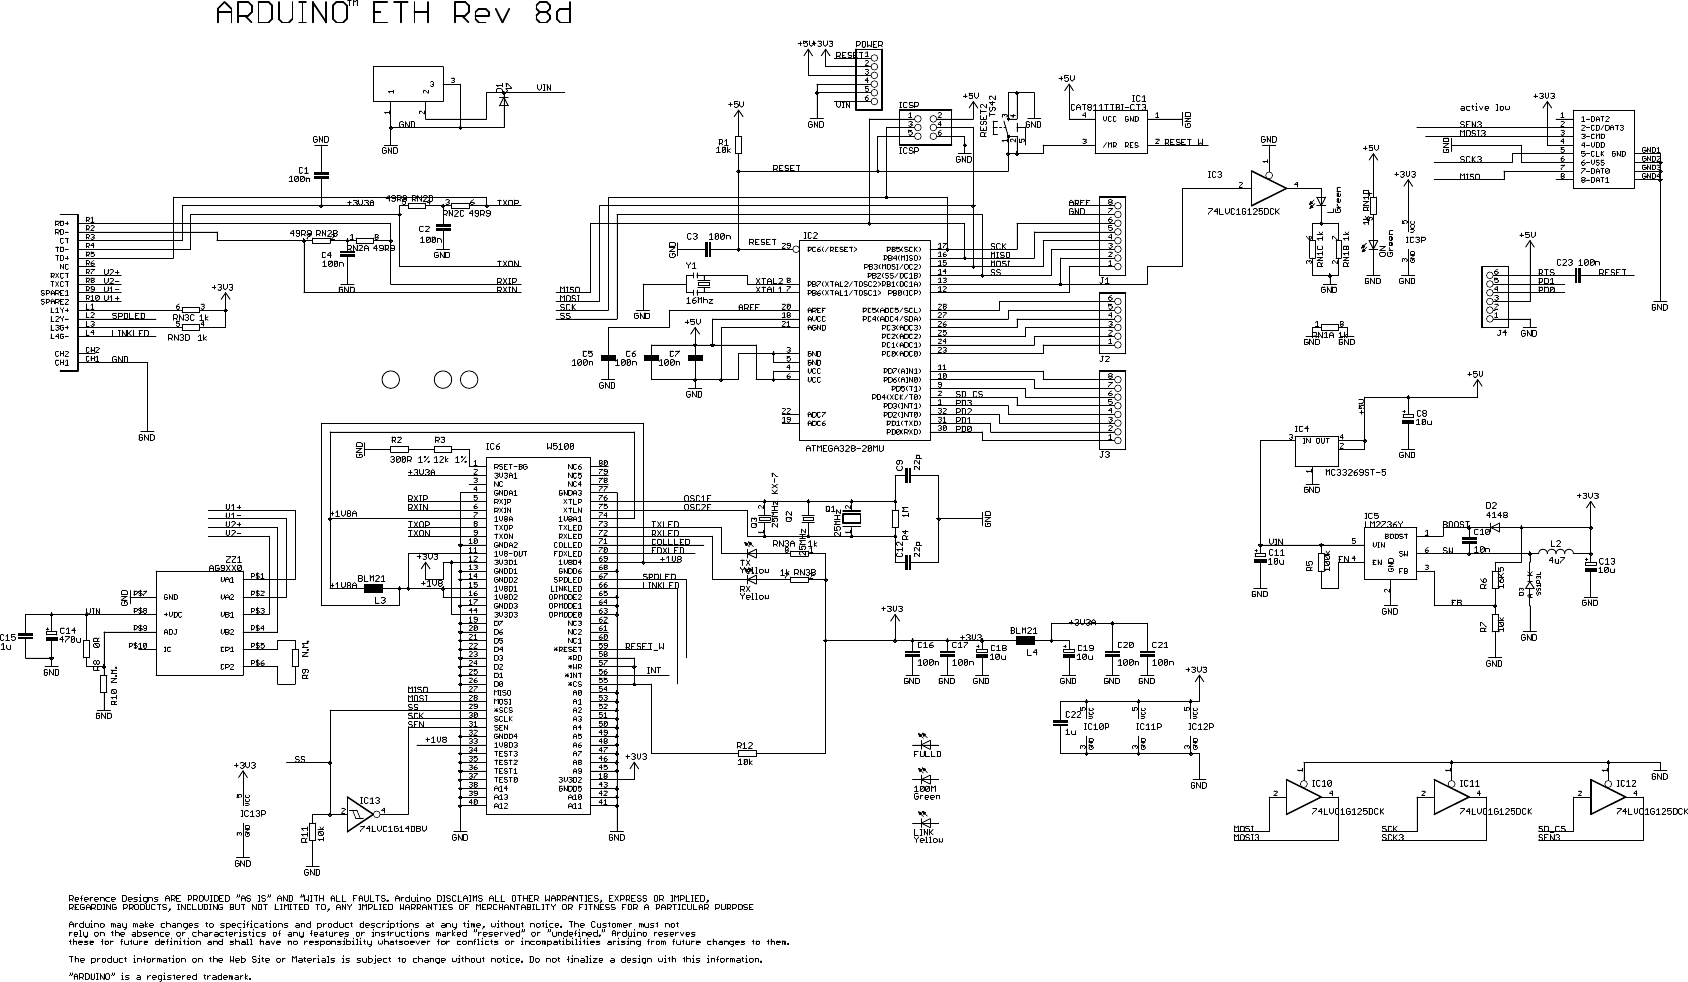 Page 1 of 1 - Arduino_Eth08d_MU.sch Arduino-ethernet-board-rev8d-schematic